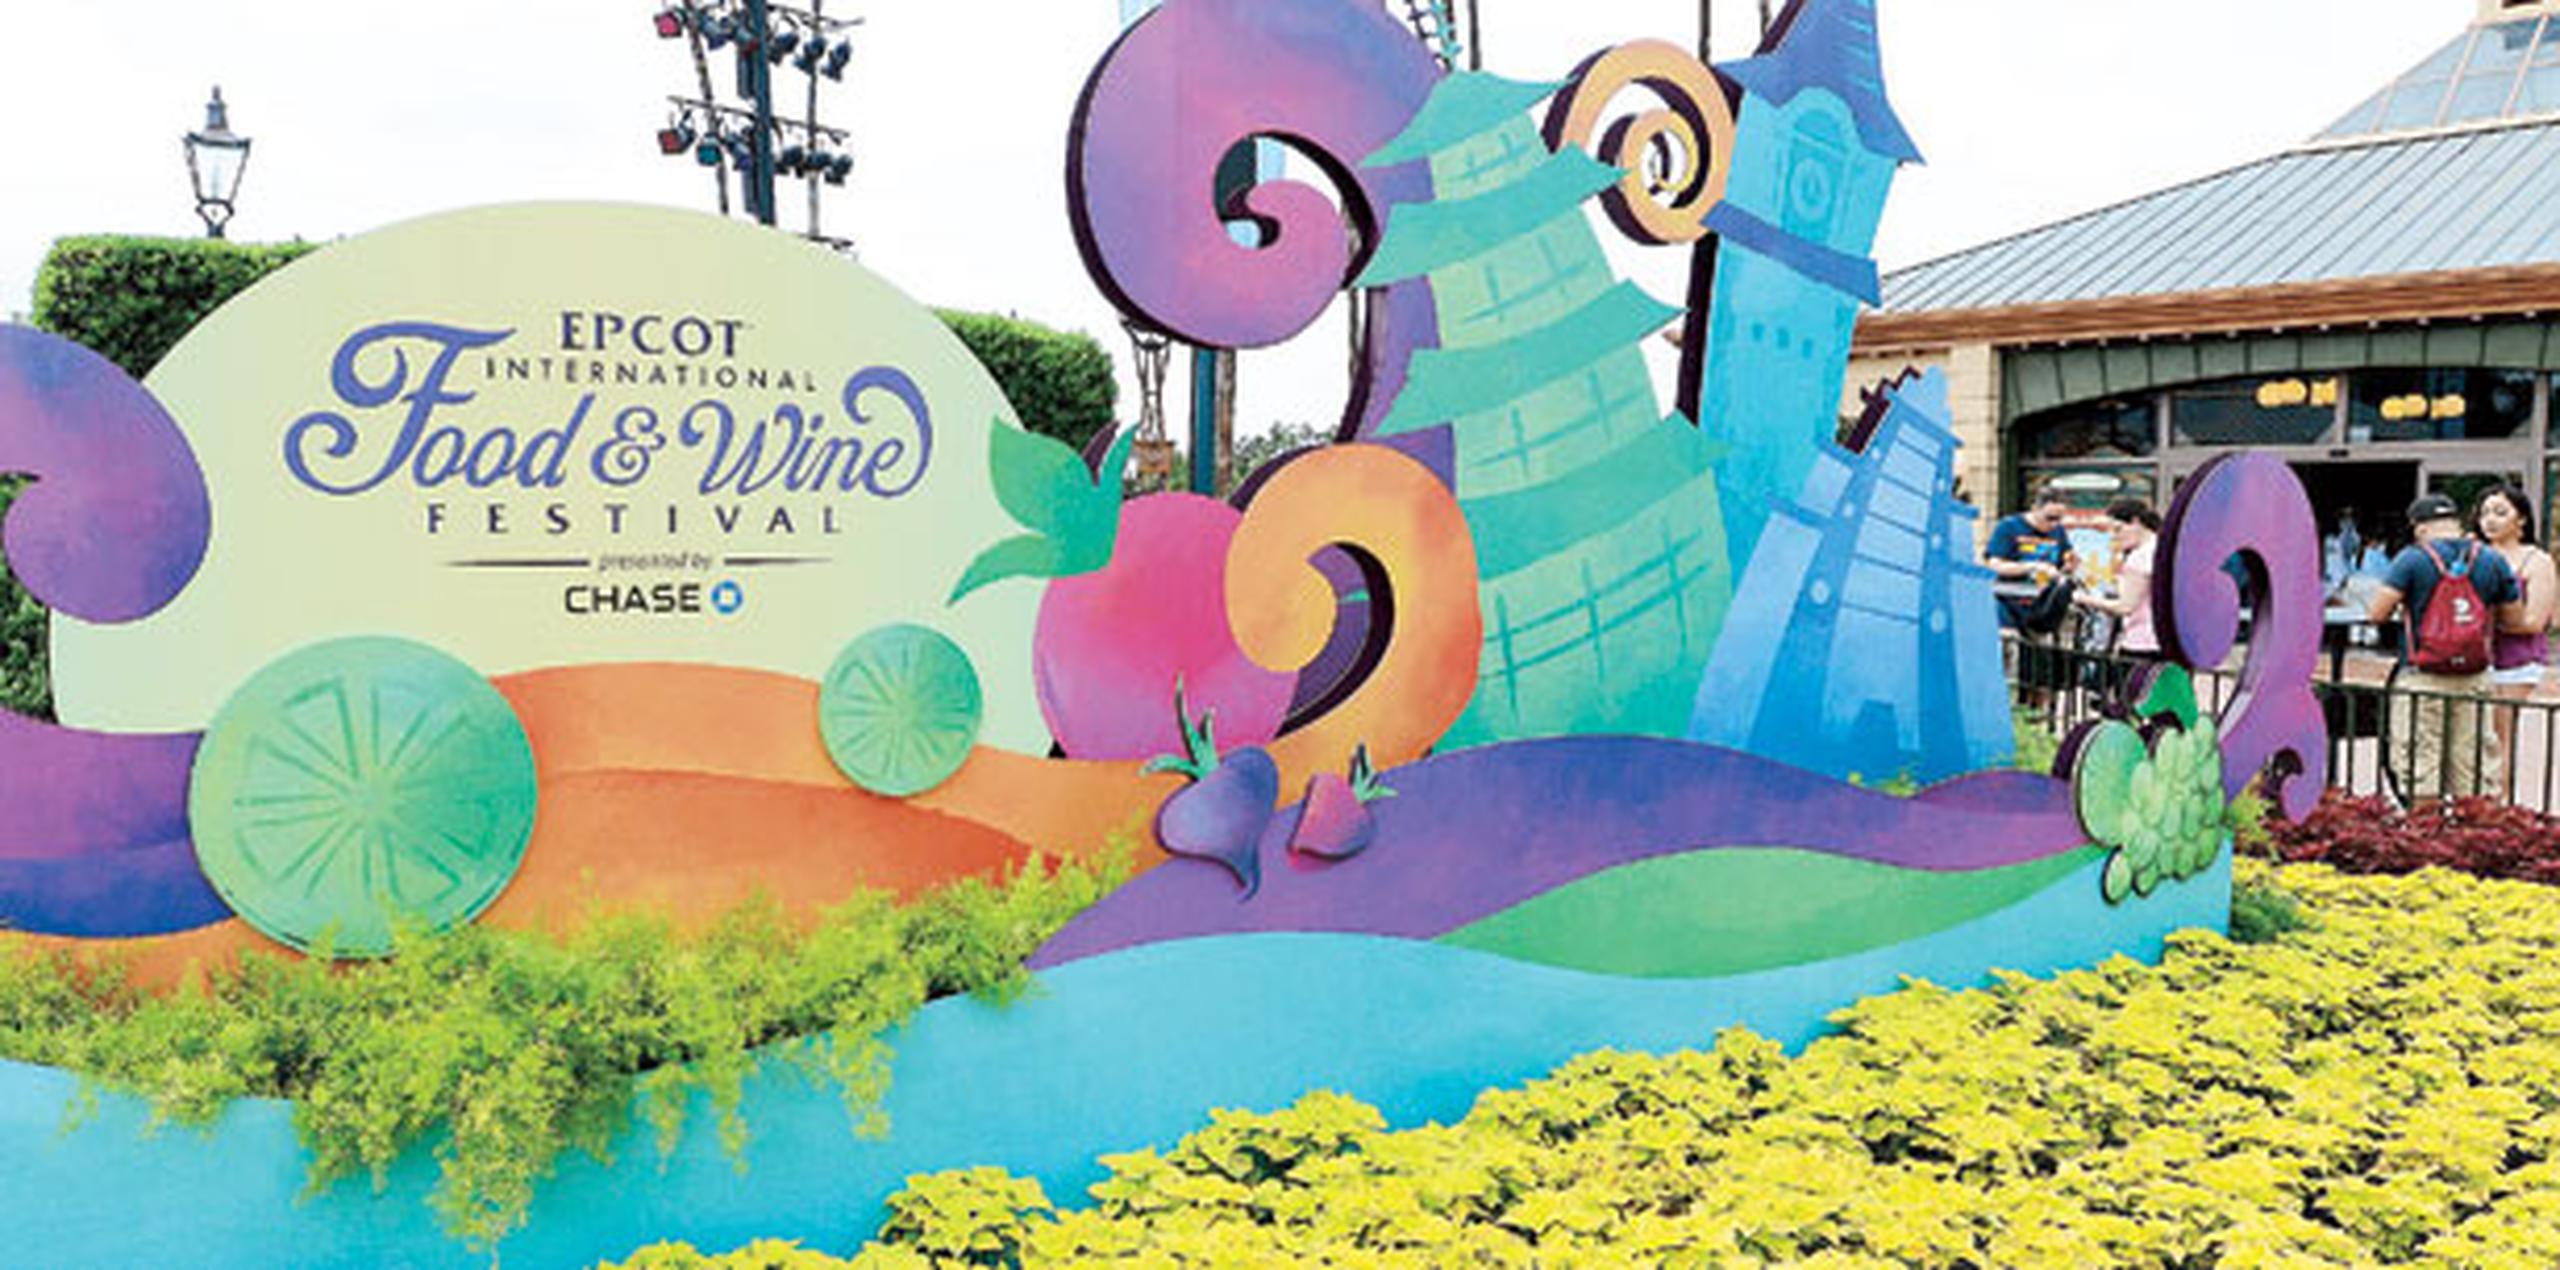 Como escenario para dar a conocer este triunfal anuncio, Scott eligió la icónica cúpula del parque temático Epcot Center de Walt Disney World, en Orlando (Archivo)